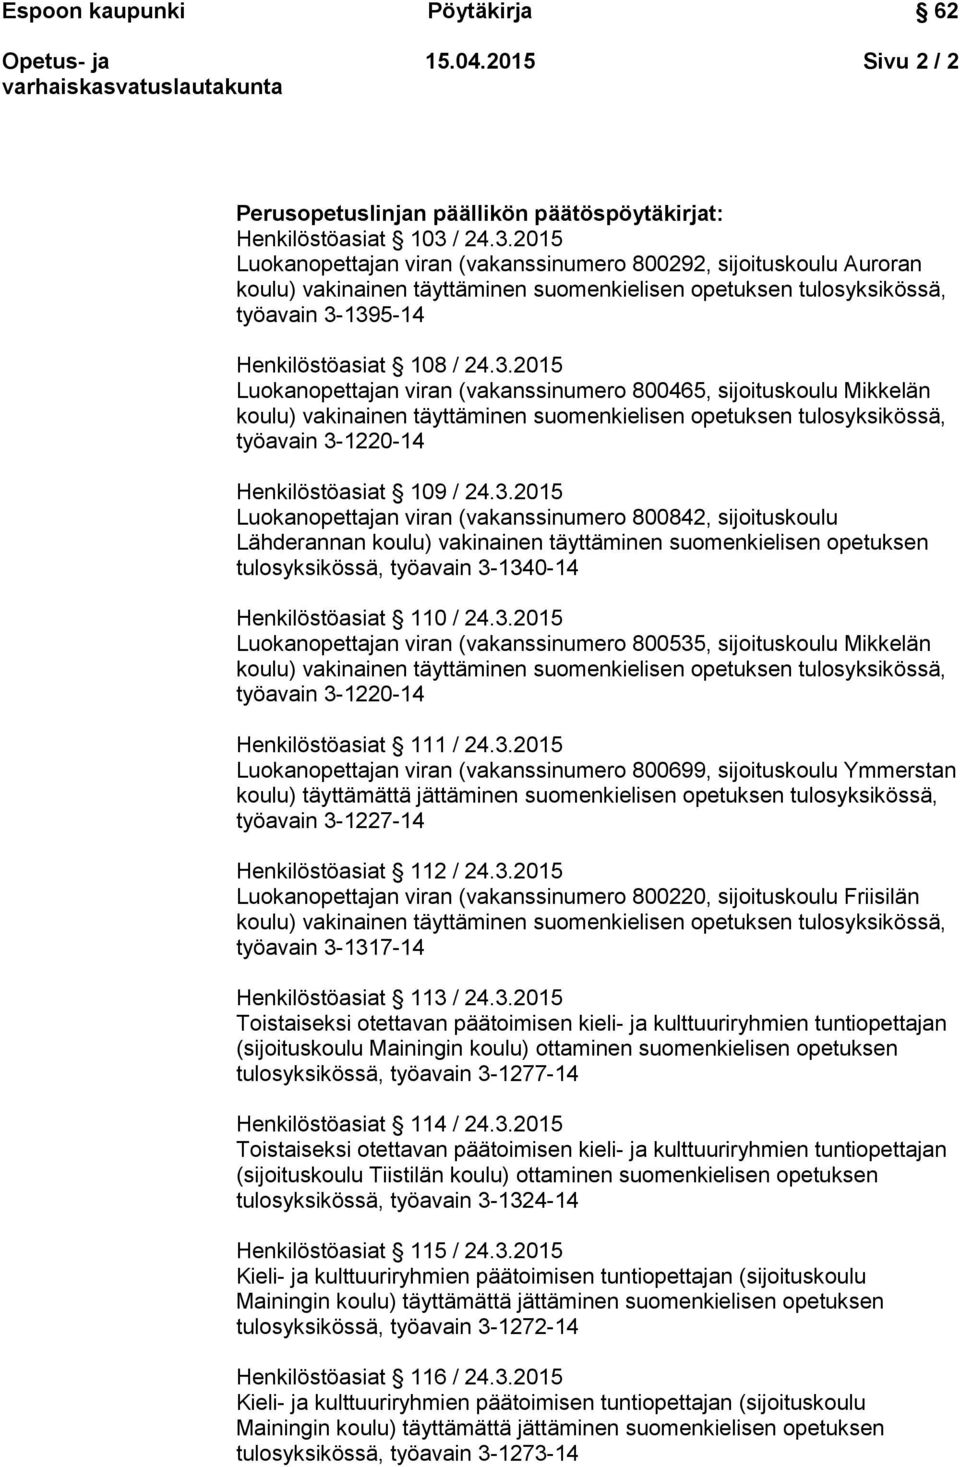 3.2015 Luokanopettajan viran (vakanssinumero 800842, sijoituskoulu Lähderannan koulu) vakinainen täyttäminen suomenkielisen opetuksen tulosyksikössä, työavain 3-1340-14 Henkilöstöasiat 110 / 24.3.2015 Luokanopettajan viran (vakanssinumero 800535, sijoituskoulu Mikkelän työavain 3-1220-14 Henkilöstöasiat 111 / 24.